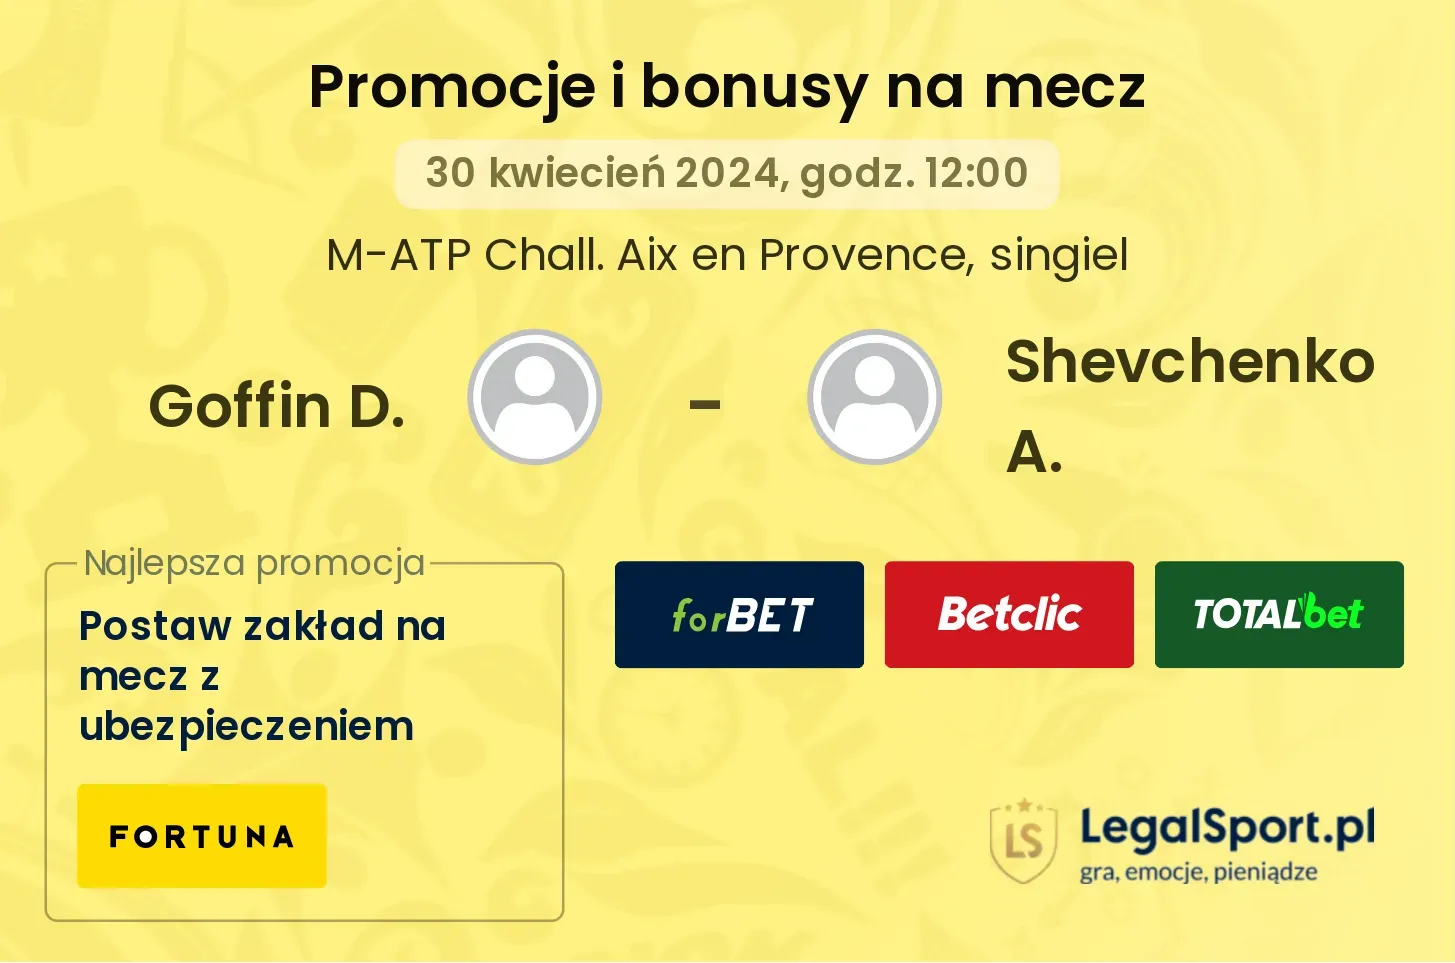 Goffin D. - Shevchenko A. promocje bonusy na mecz